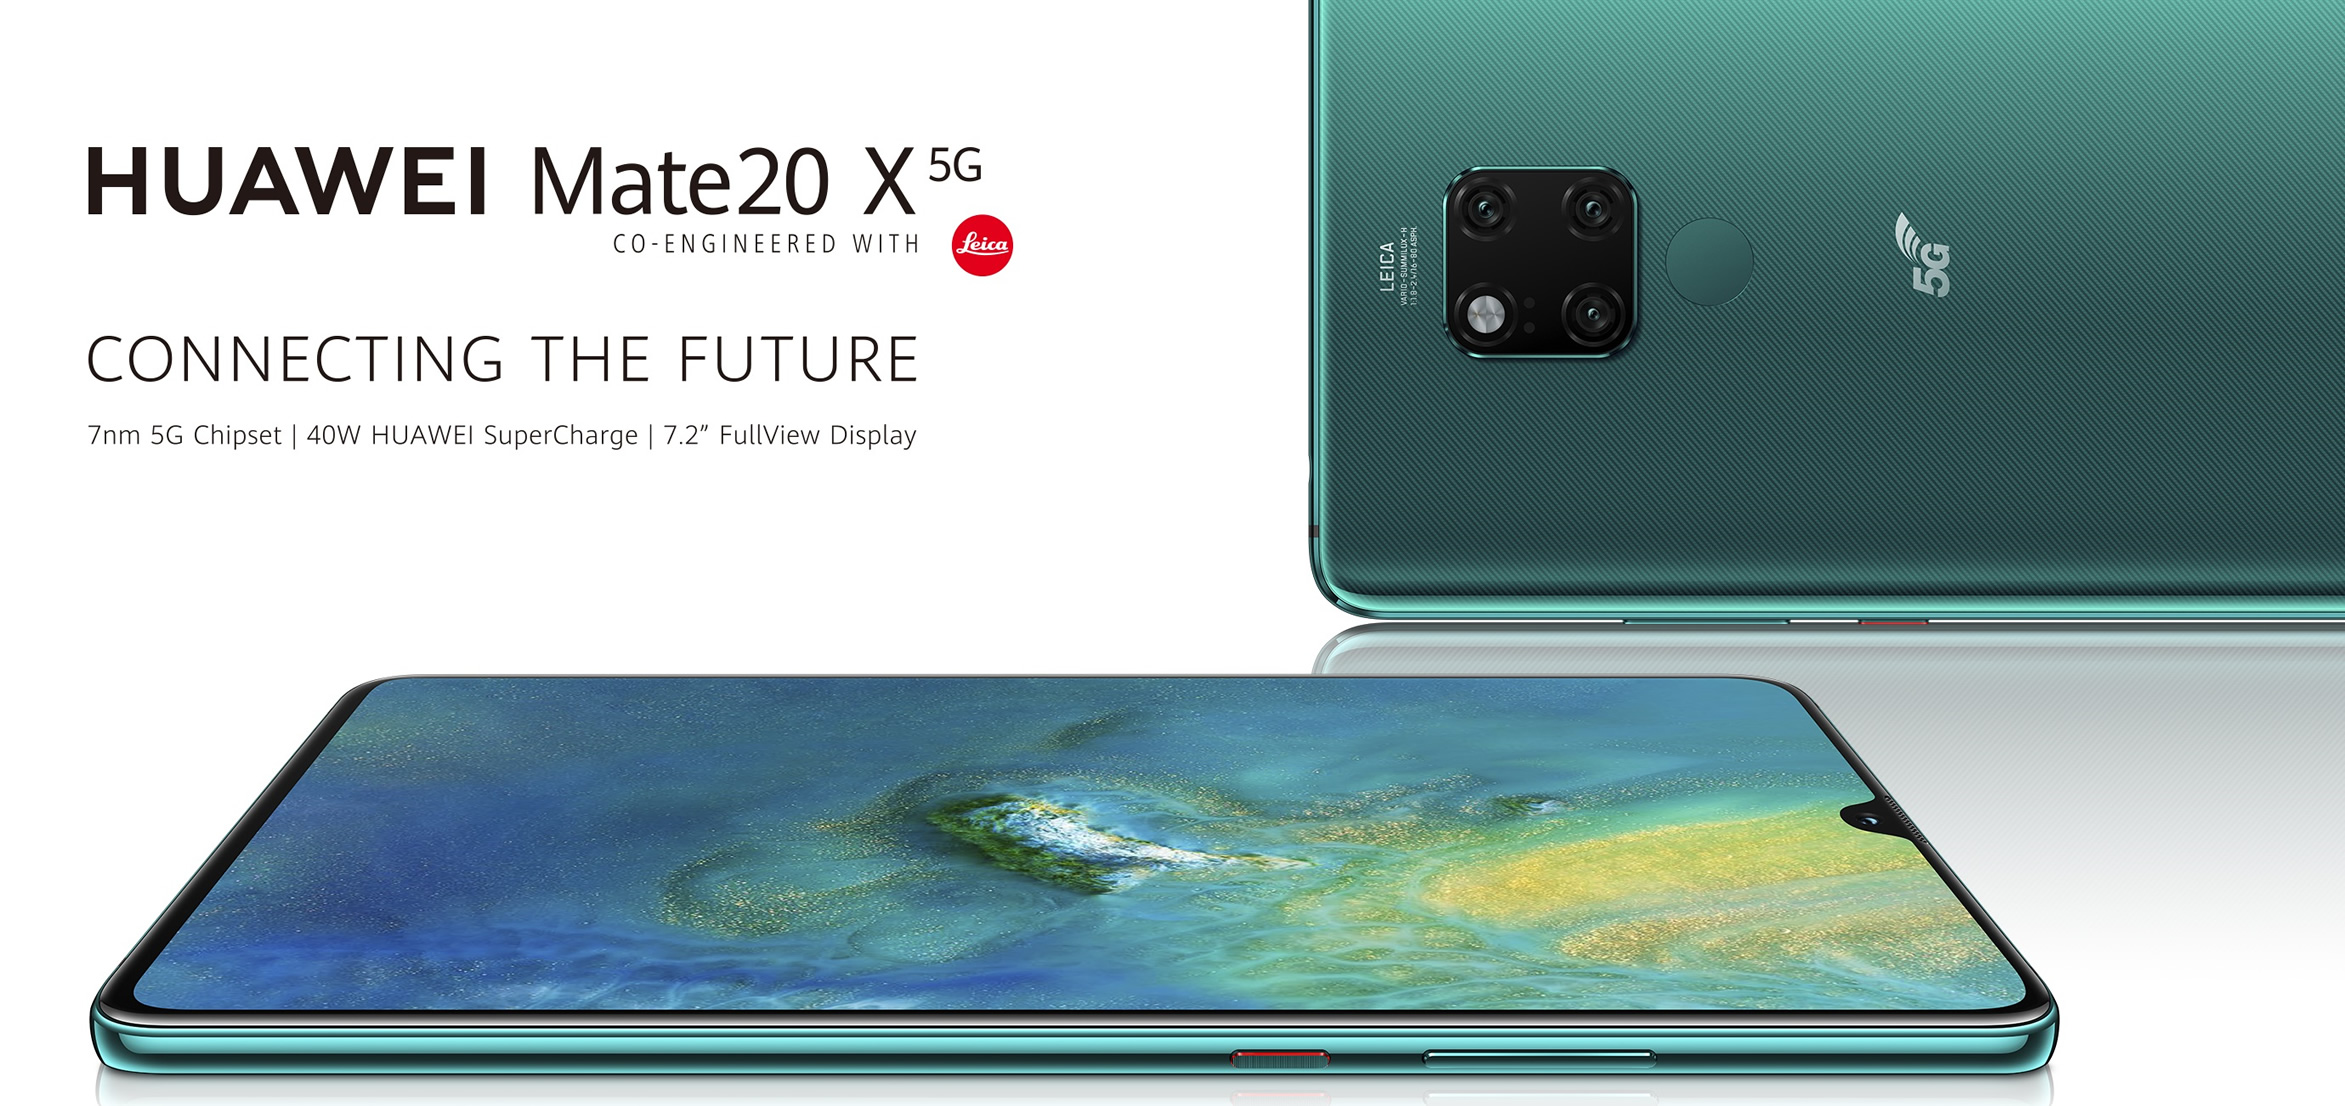 Huawei Mate 20 X 5G resmi olarak tanıtıldı